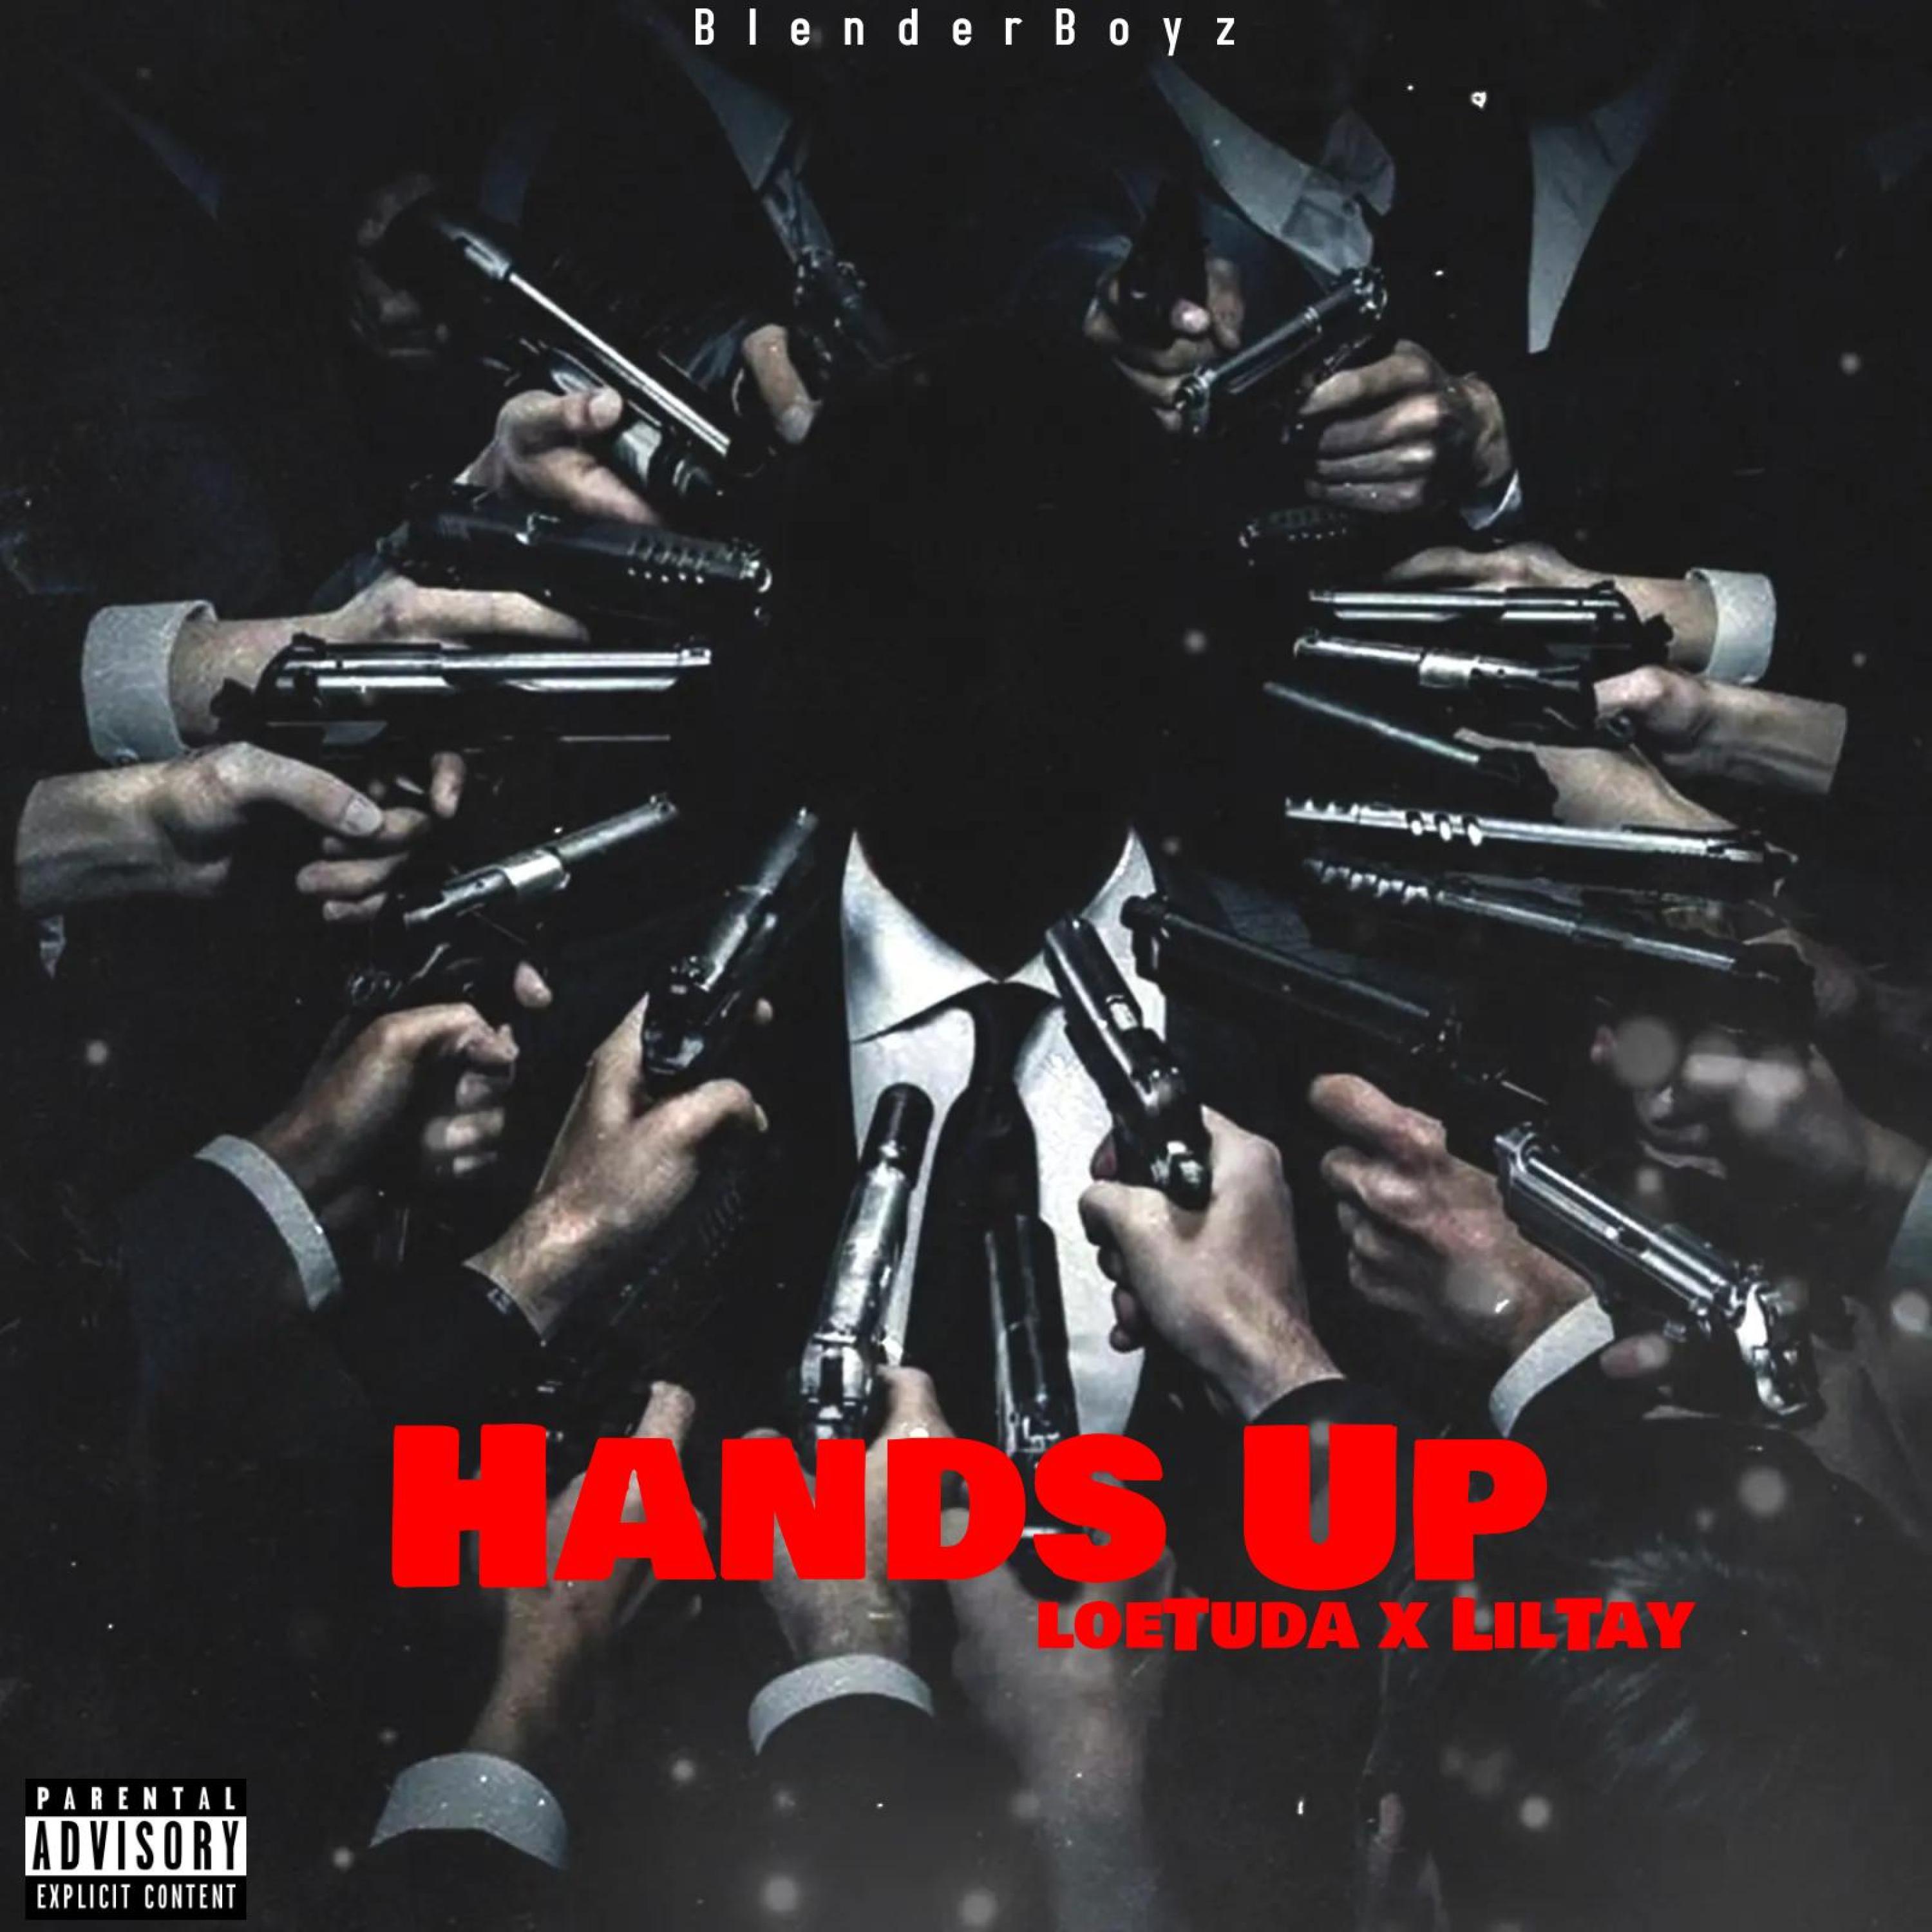 LoeTuda - Hands up (feat. LilTay)